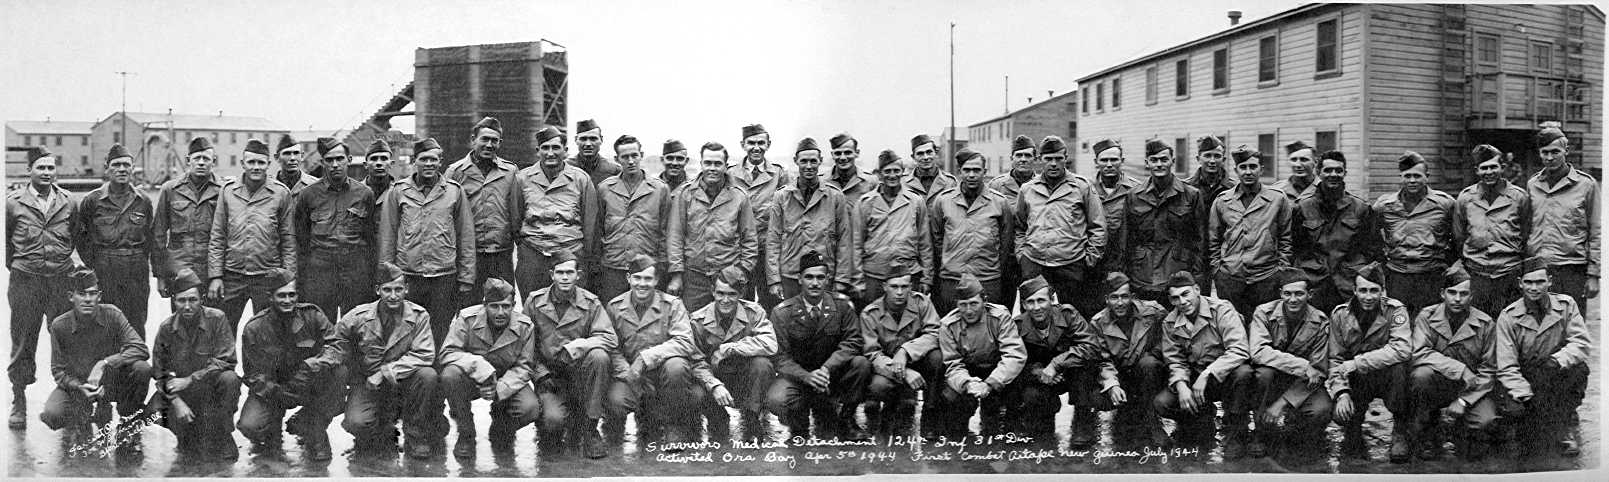 124th Inf Regt Surviving Medics, 1945